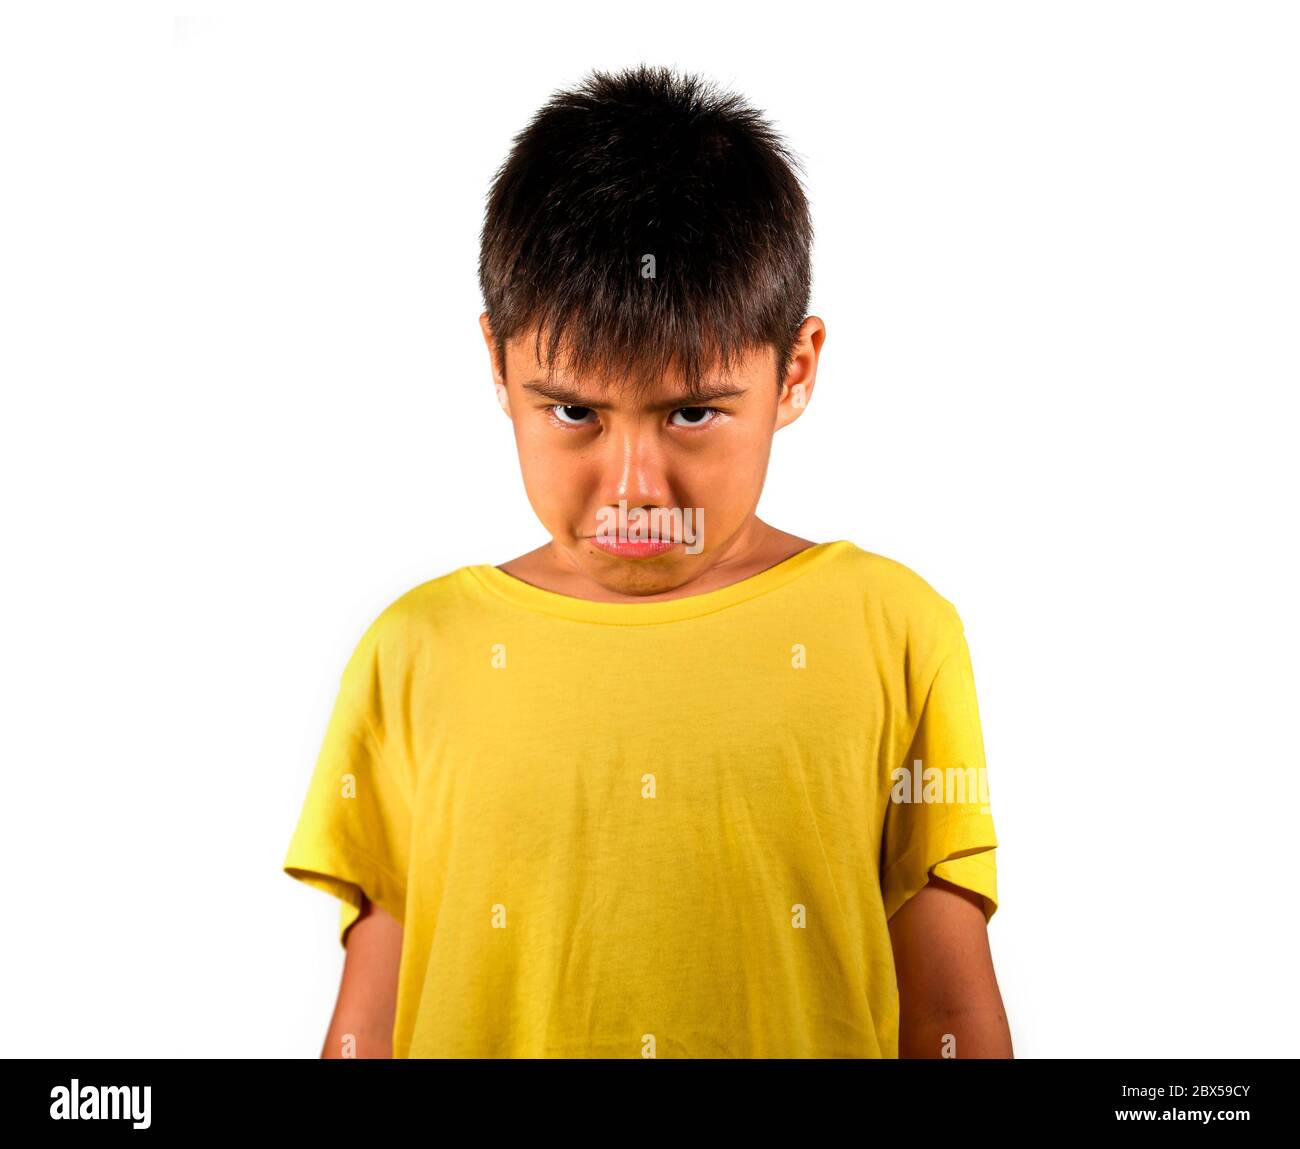 niño de 8 años triste y avergonzado después de sufrir reprimenda aislada sobre fondo blanco usando camiseta amarilla en niño emocional regañado y nagg Foto de stock